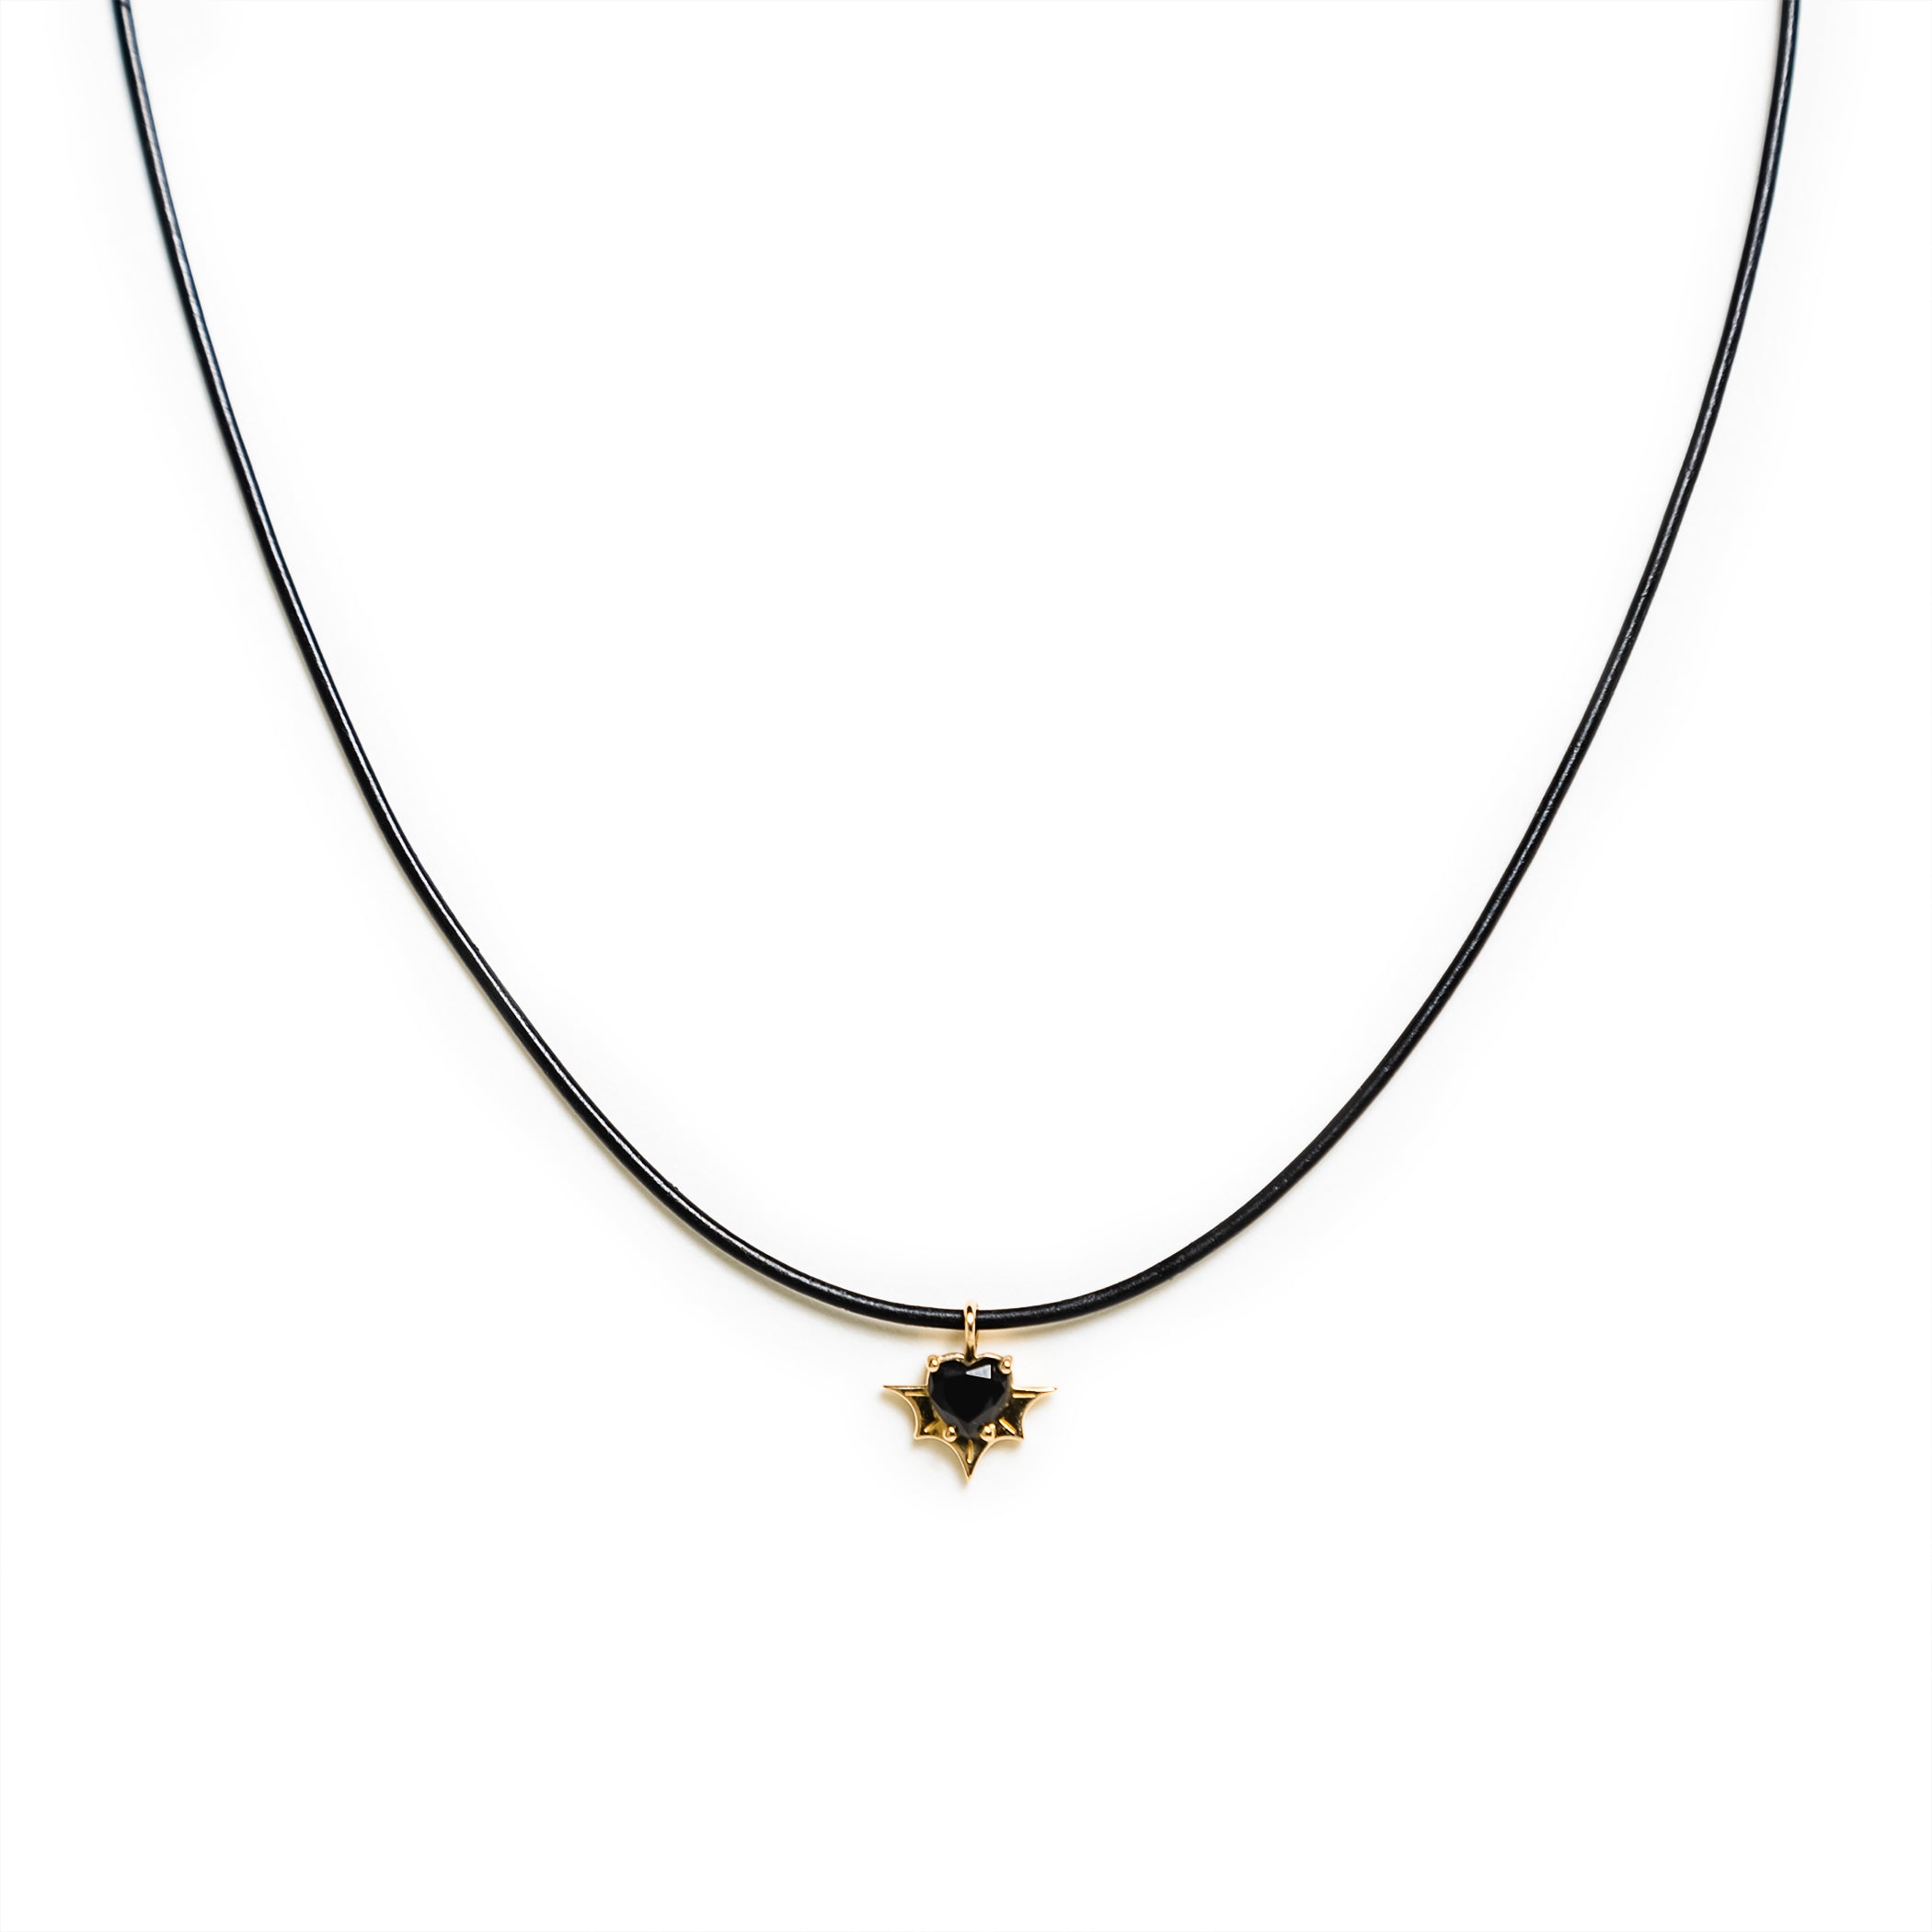 Black Velvet Choker Necklace – French Meadows